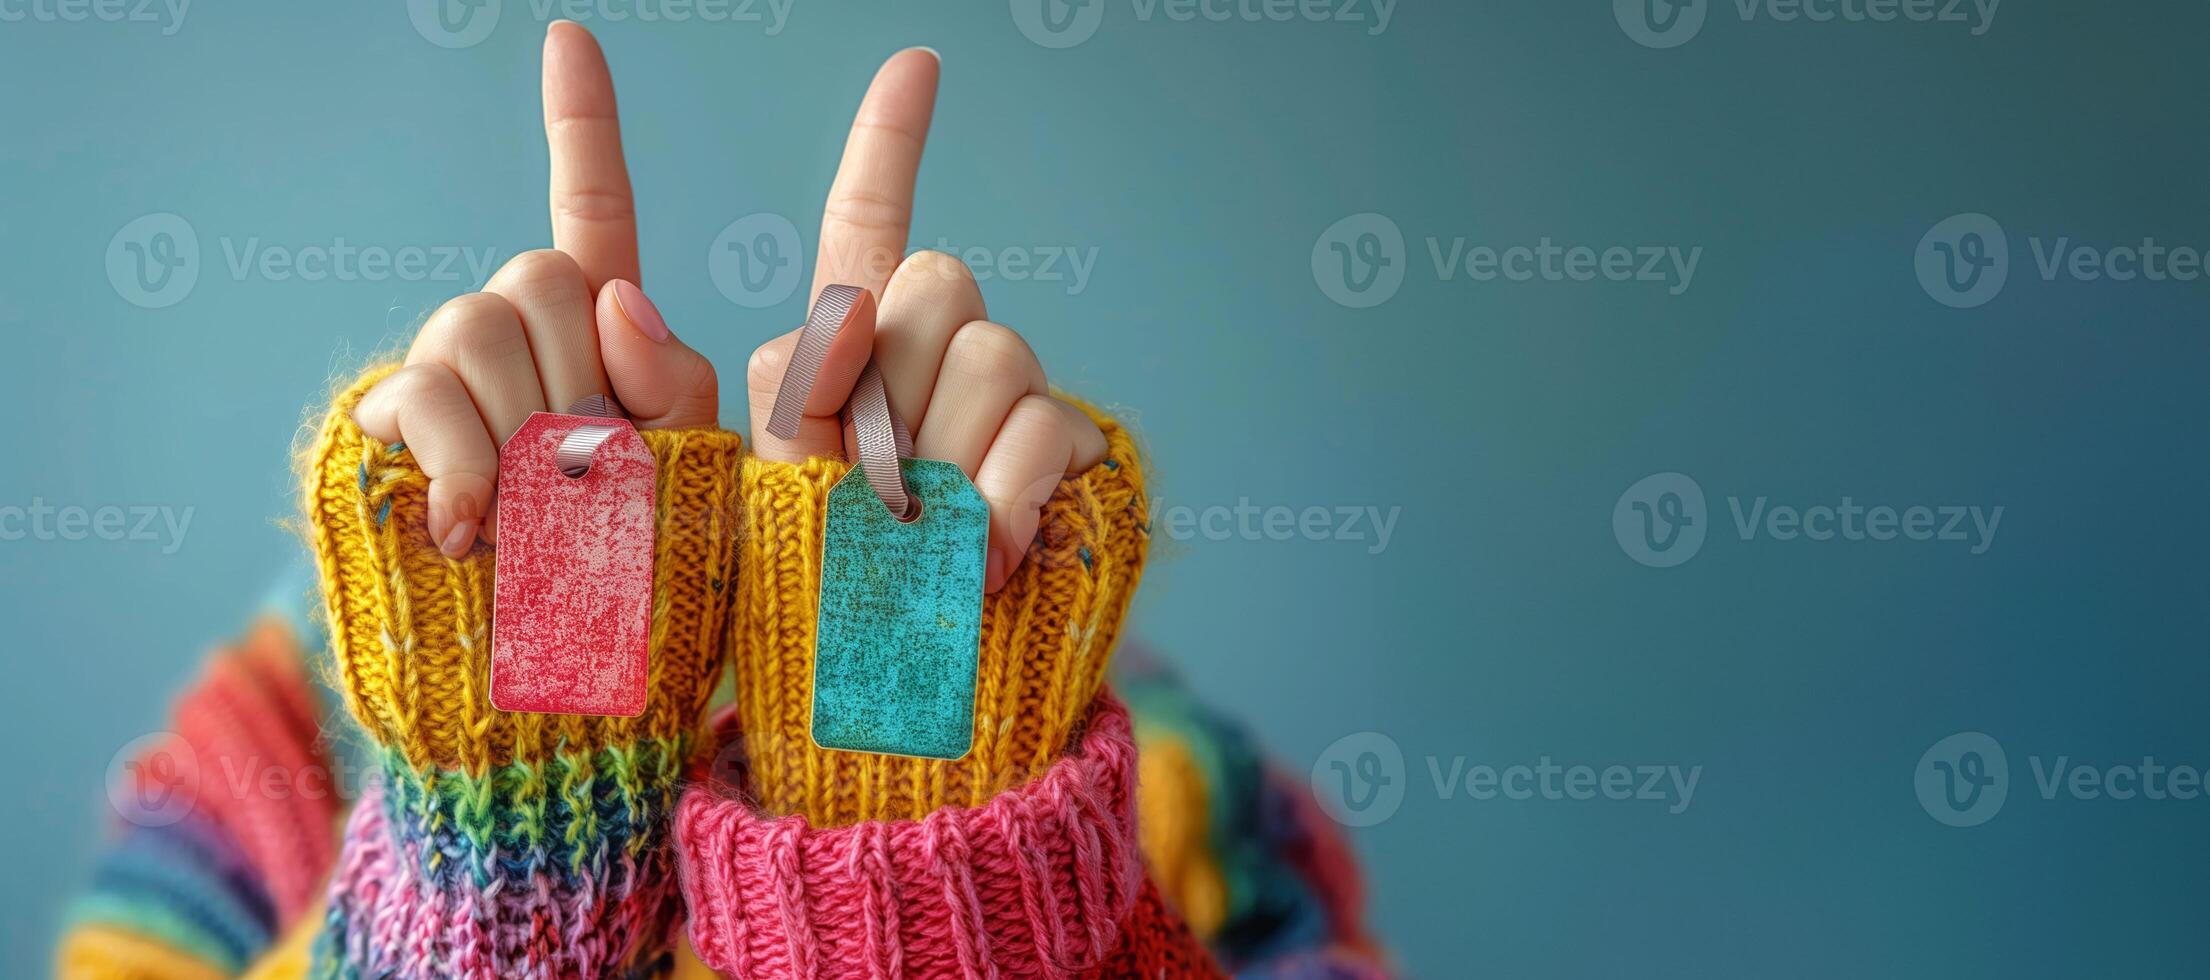 speels gebaar met kleurrijk geschenk tags Aan vingers over- blauw achtergrond, verkoop concept foto